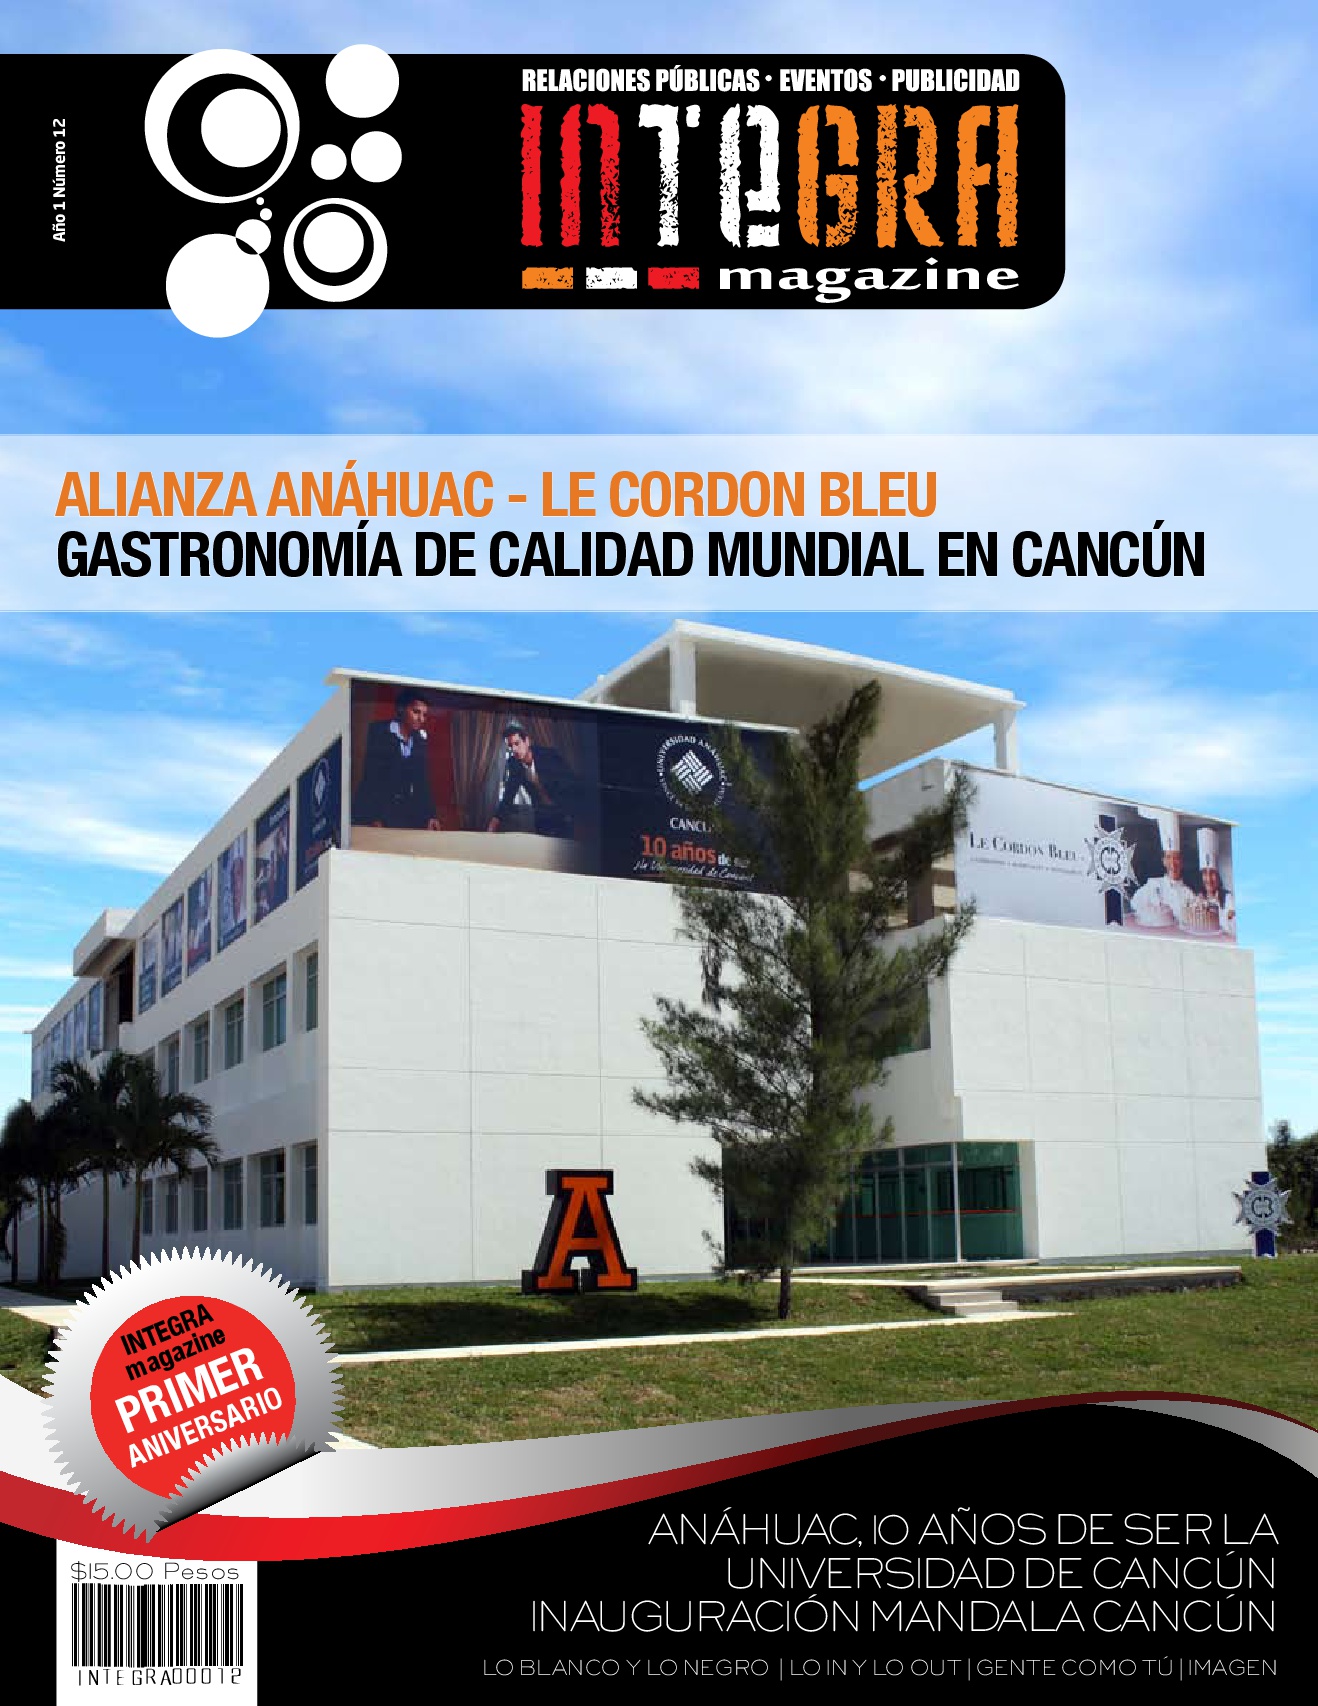 Alianza Anáhuac – Le Cordon Bleu _ Gastronomía de calidad mundial en Cancún